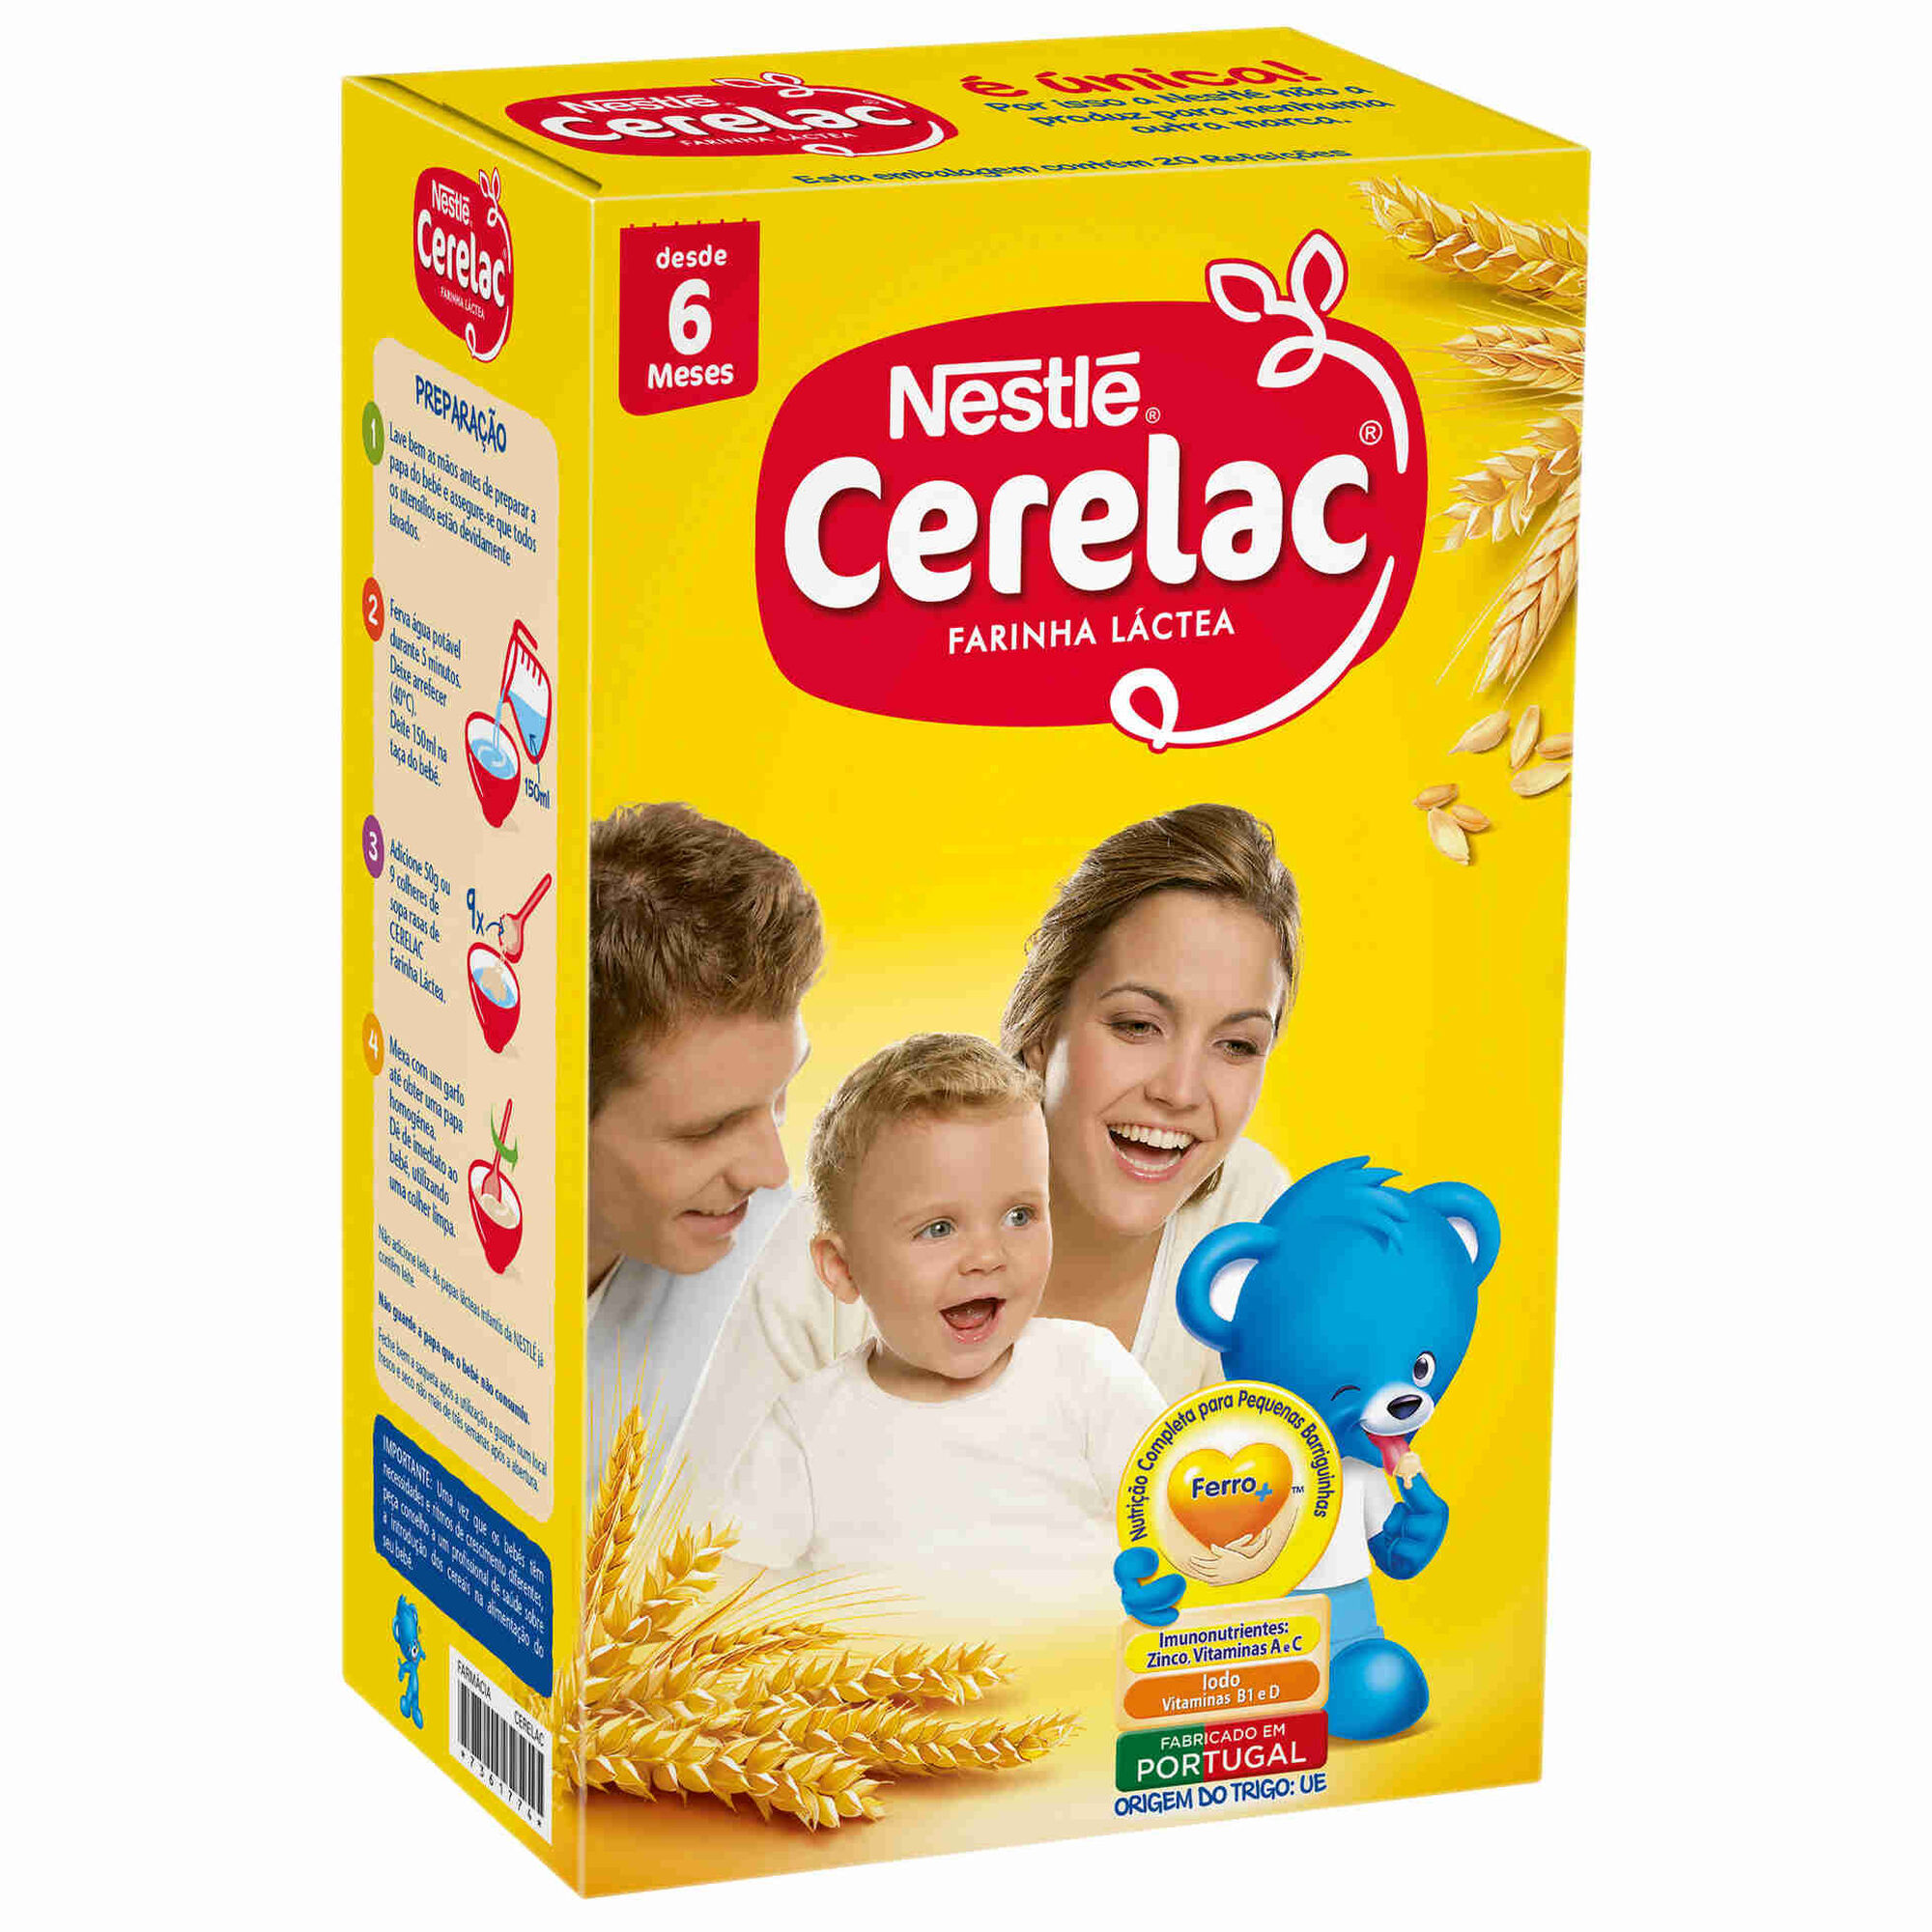 Nestlé Cerelac Farinha Láctea 900g